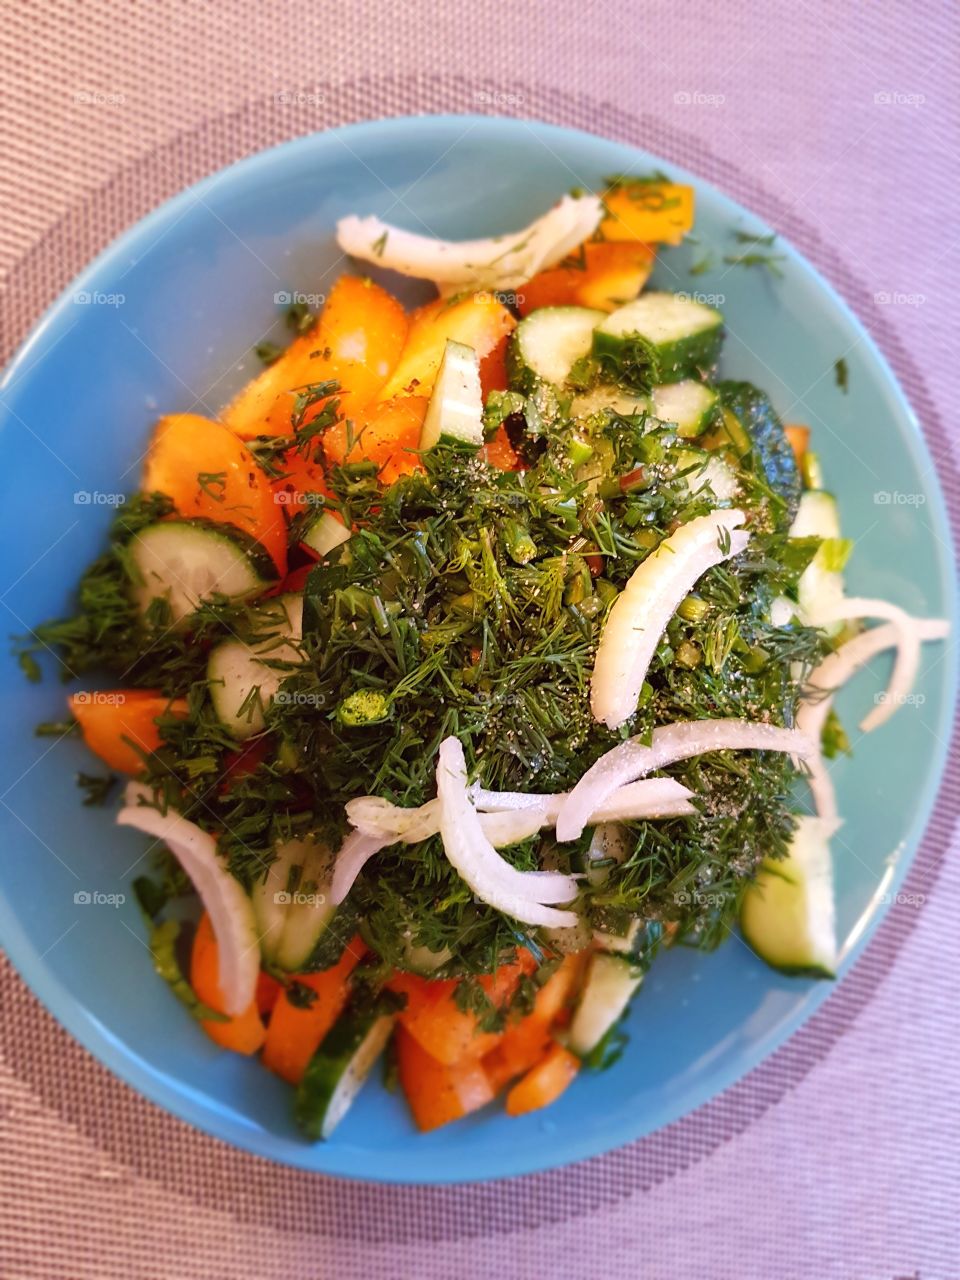 Healthy green salad.